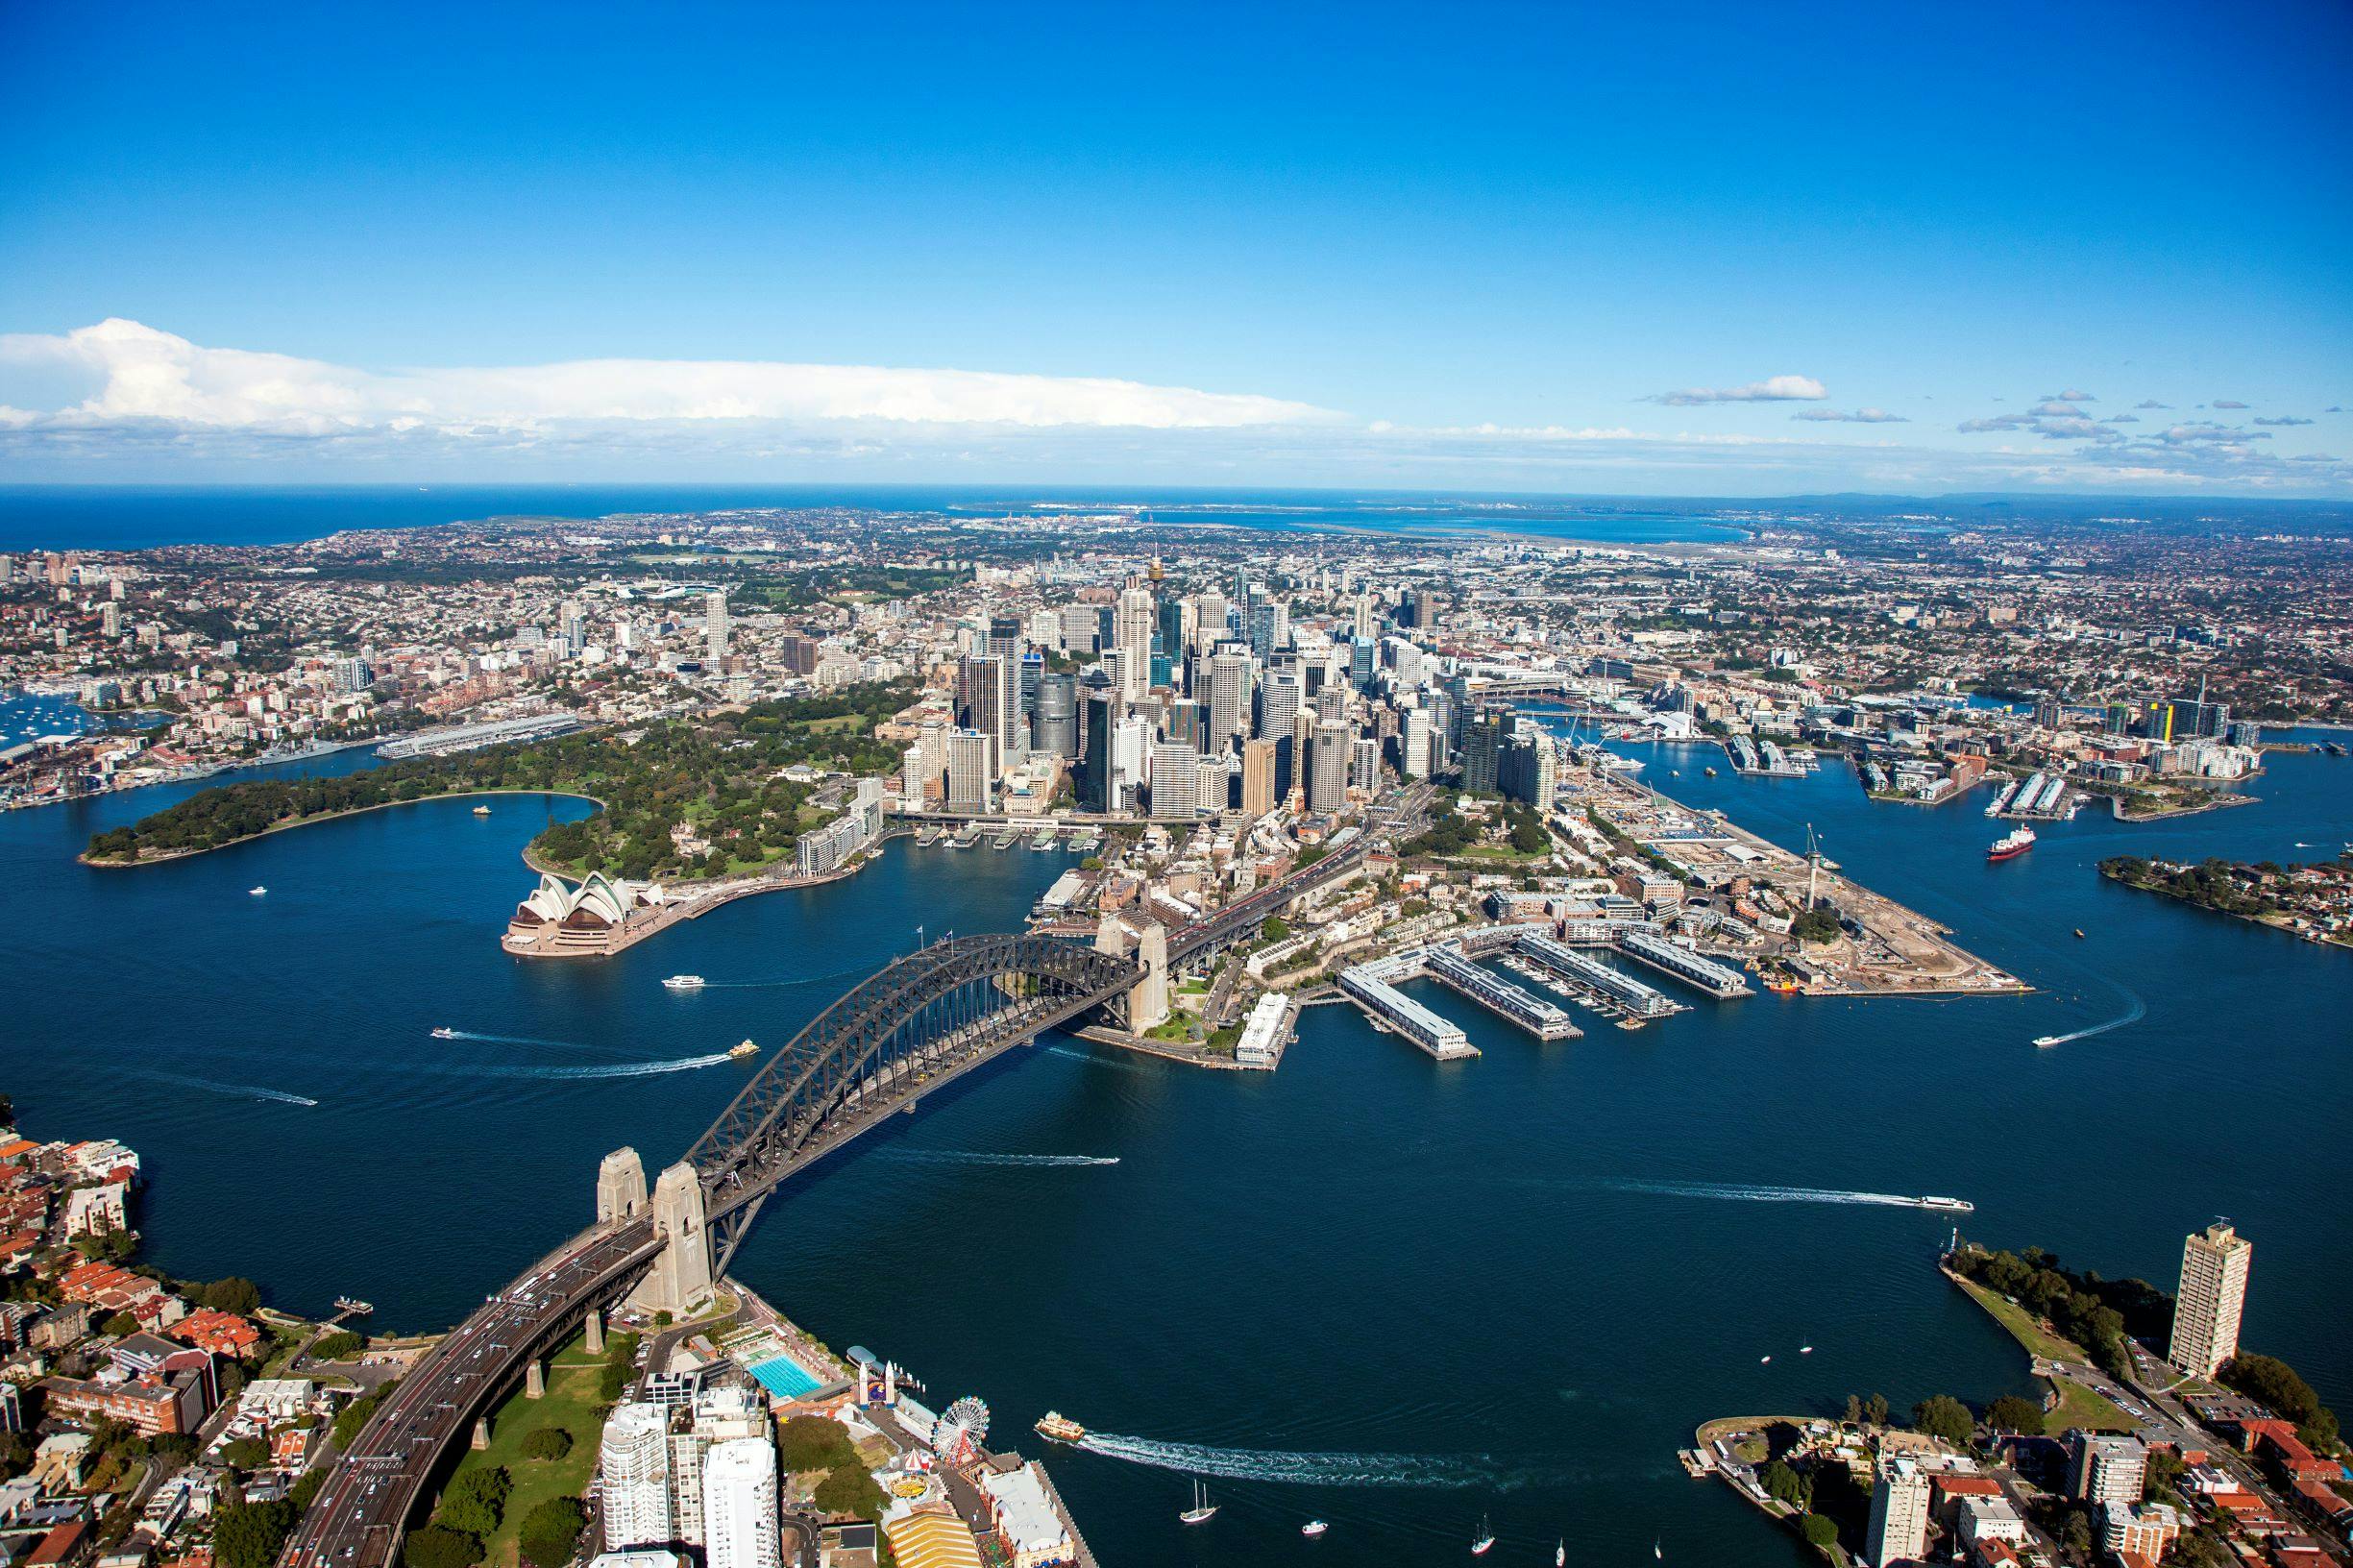 Rundflug über den Hafen von Sydney – private 20-minütige Tour